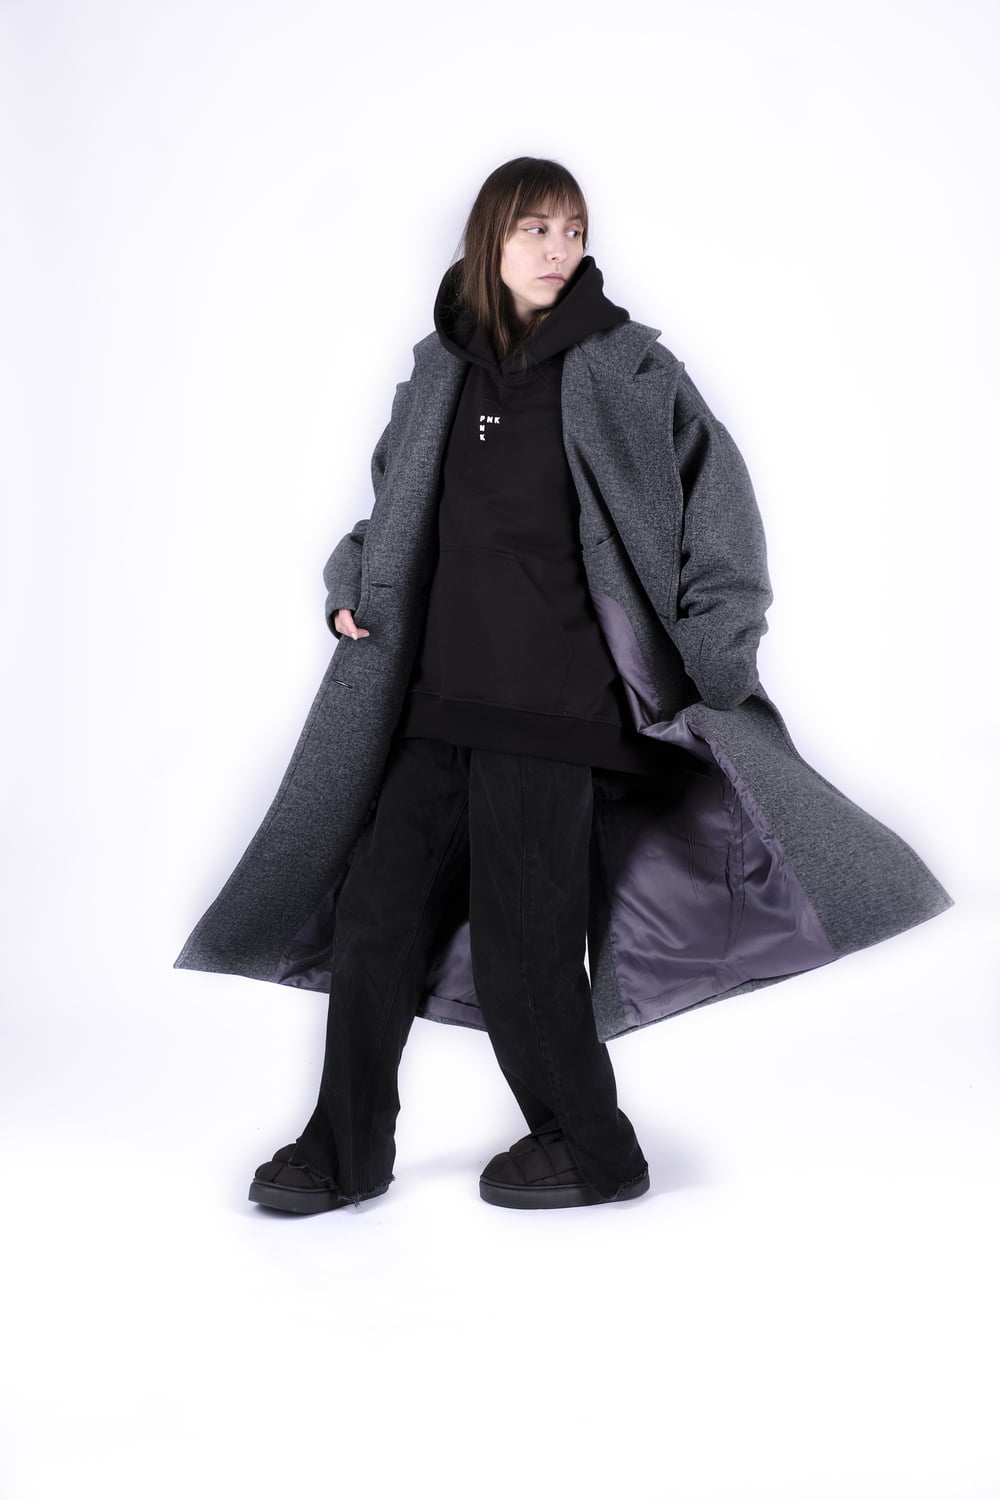 <p>Мы создали идеальную модель для парней и девушек. Это стильное оверсайз пальто будет идеальным как парням, так и девушкам. А самое главное - это идеальное дополнение к вашему гардербу</p>